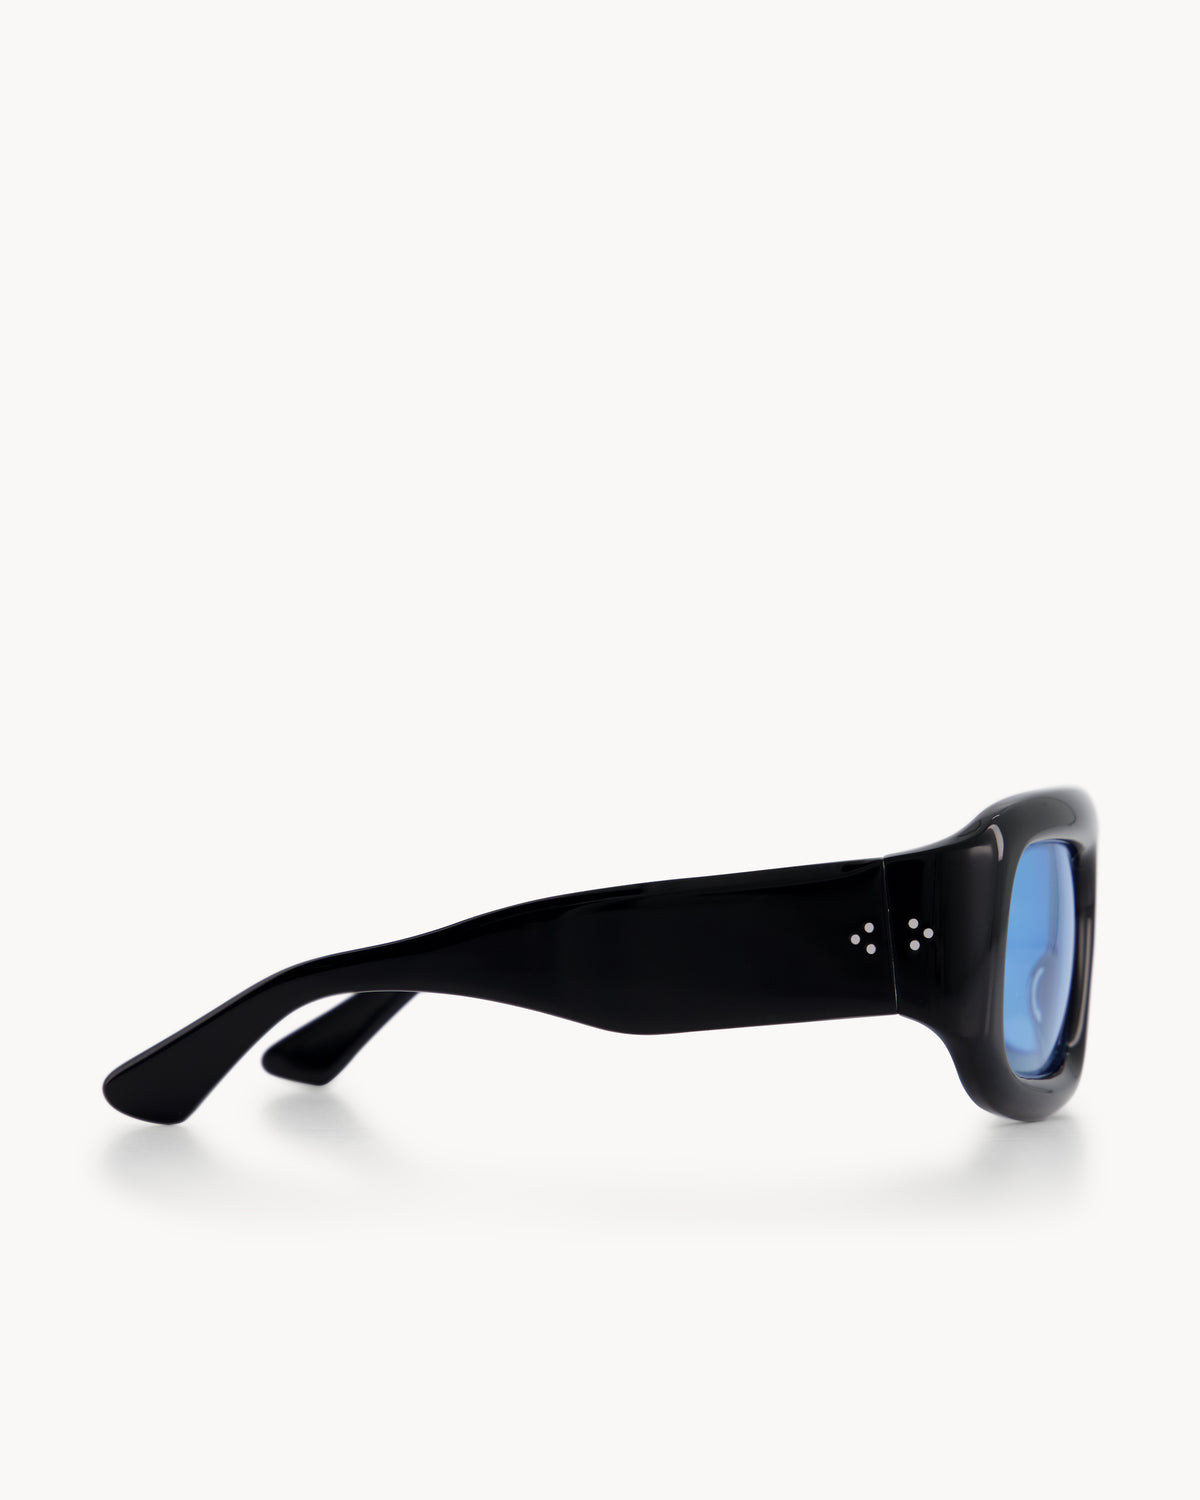 Port Tanger Mauretania Sunglasses in Black Acetate and Rif Blue Lenses 4